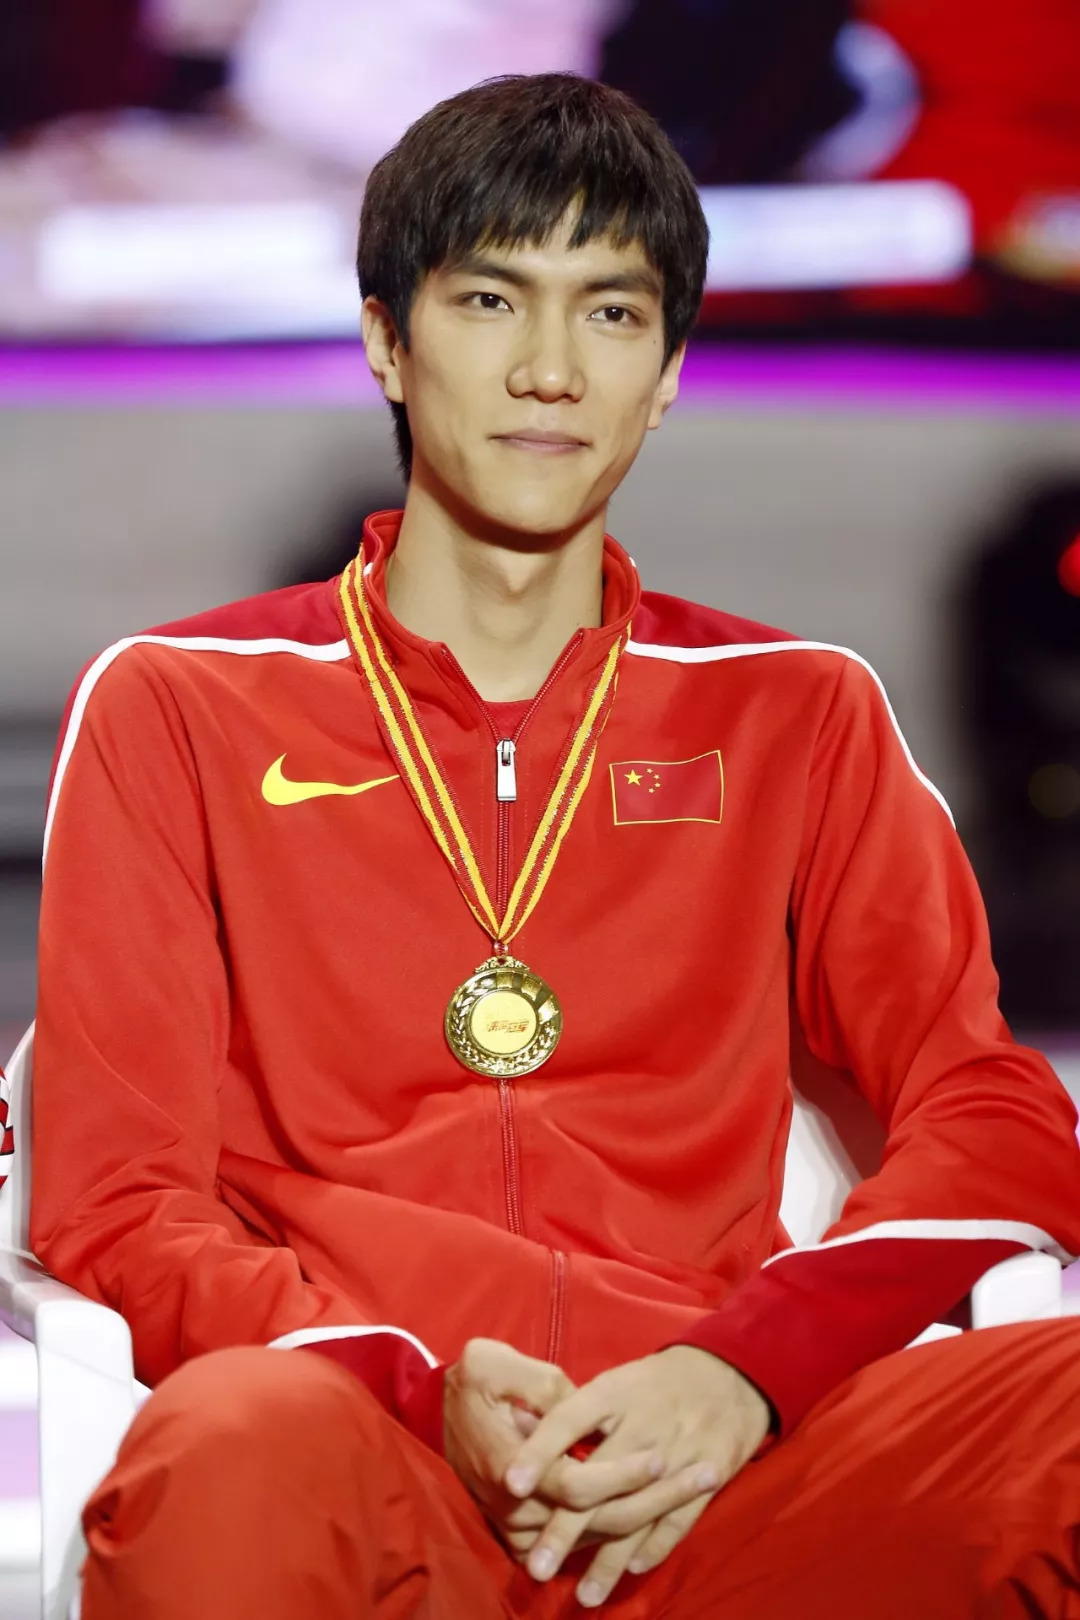 在8月27日进行的跳高决赛中,中国选手王宇以2米30的成绩获得金牌,这是